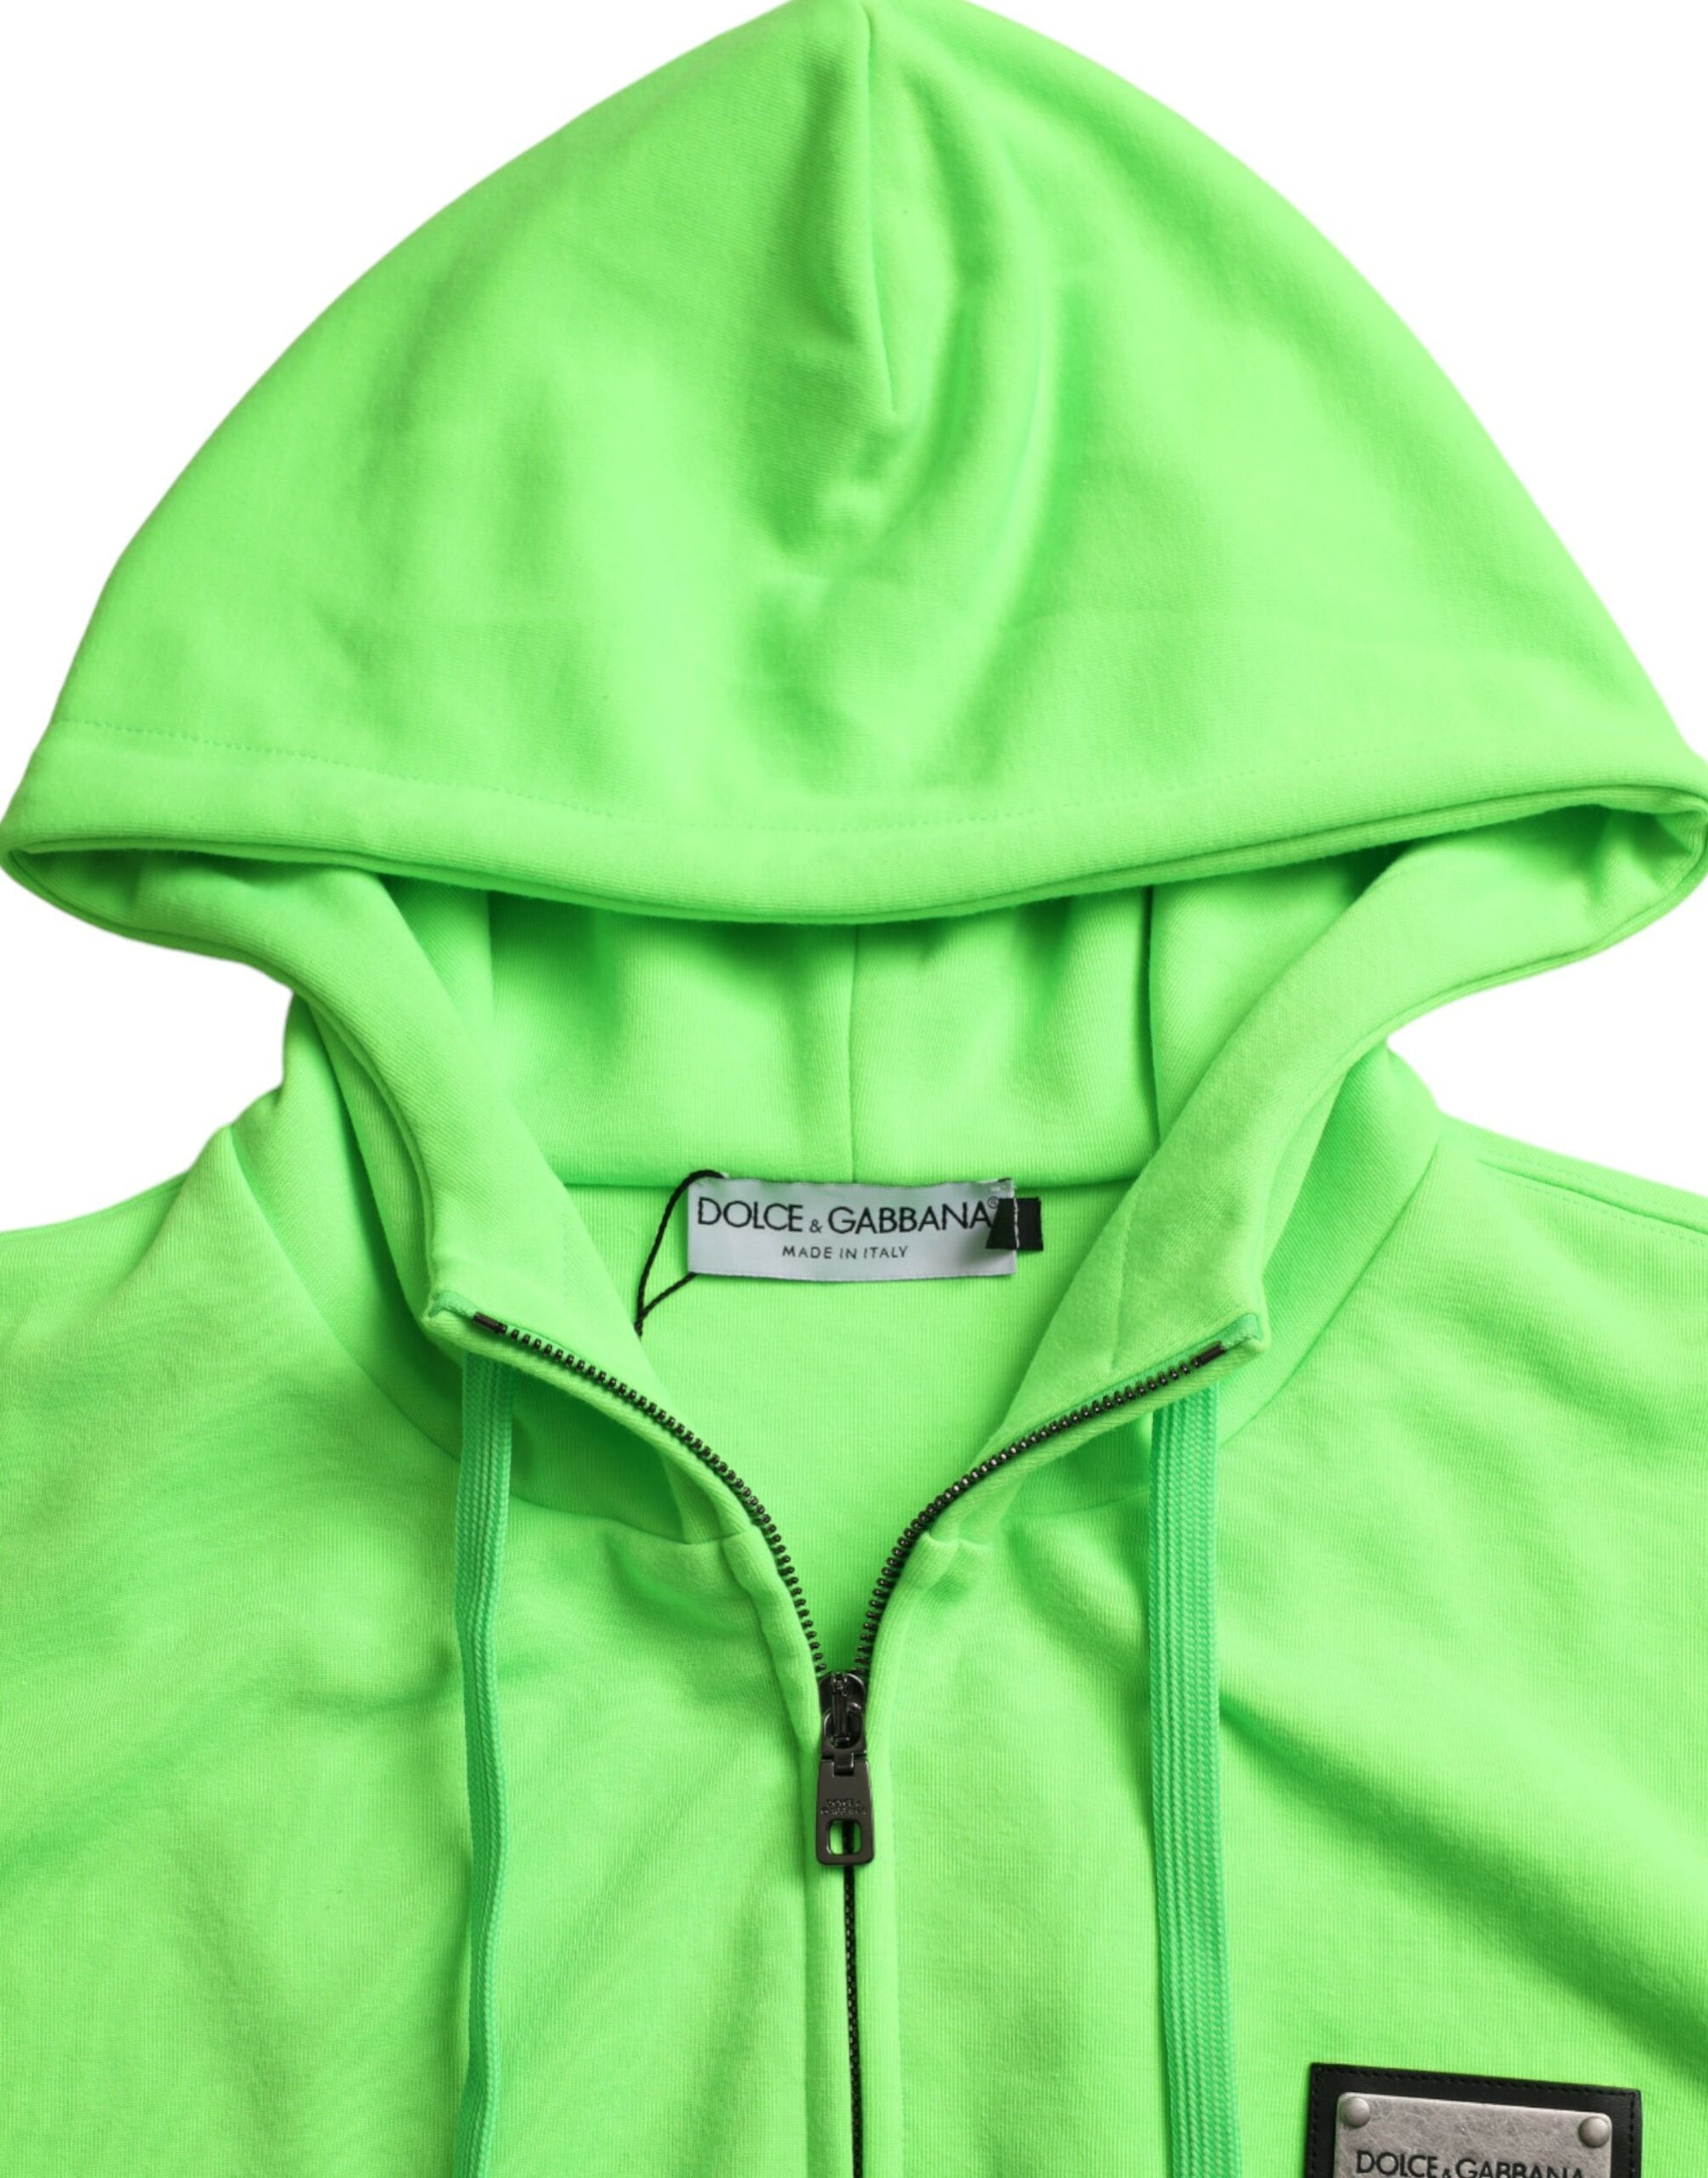 Neon Green Hooded Full Zip Top Sweater